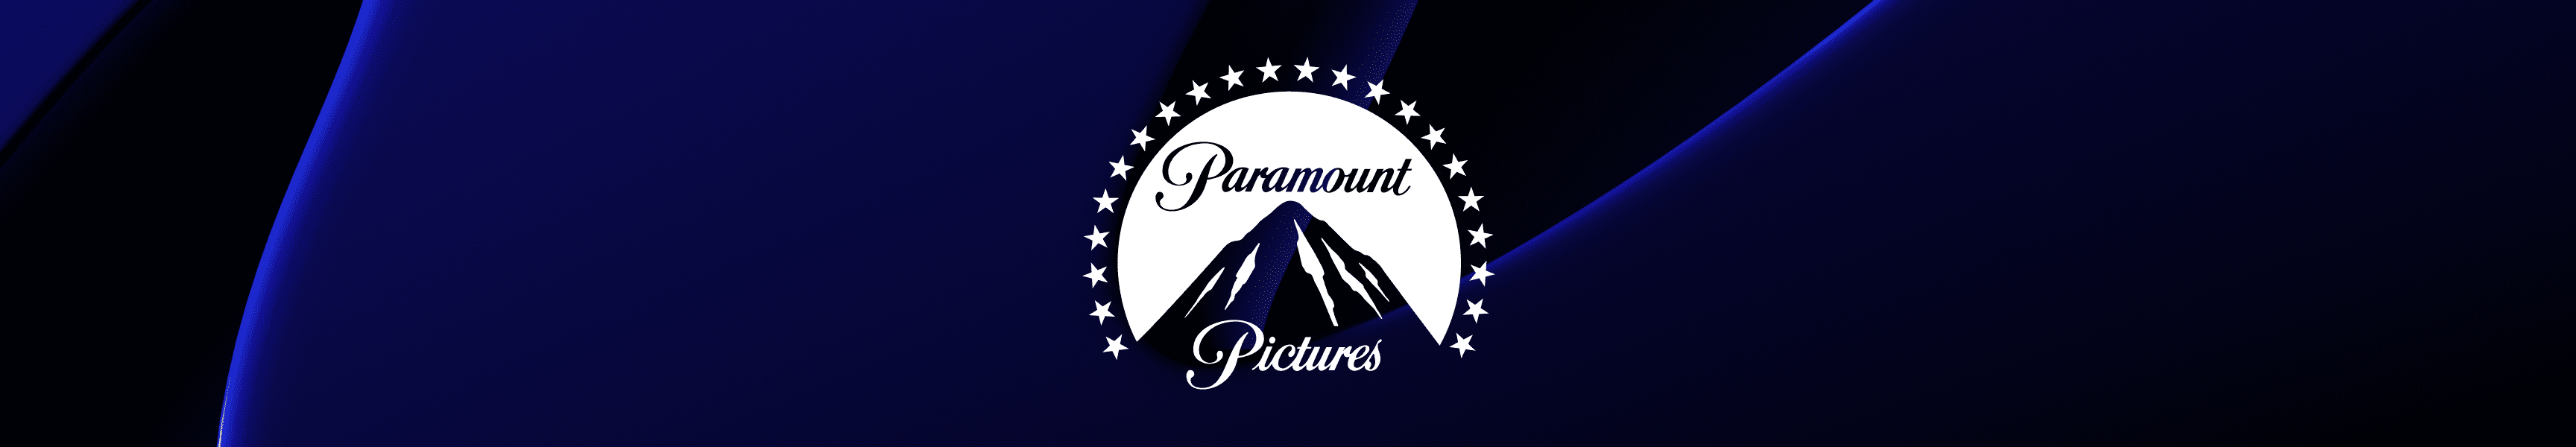 Paramount Pictures Libretas